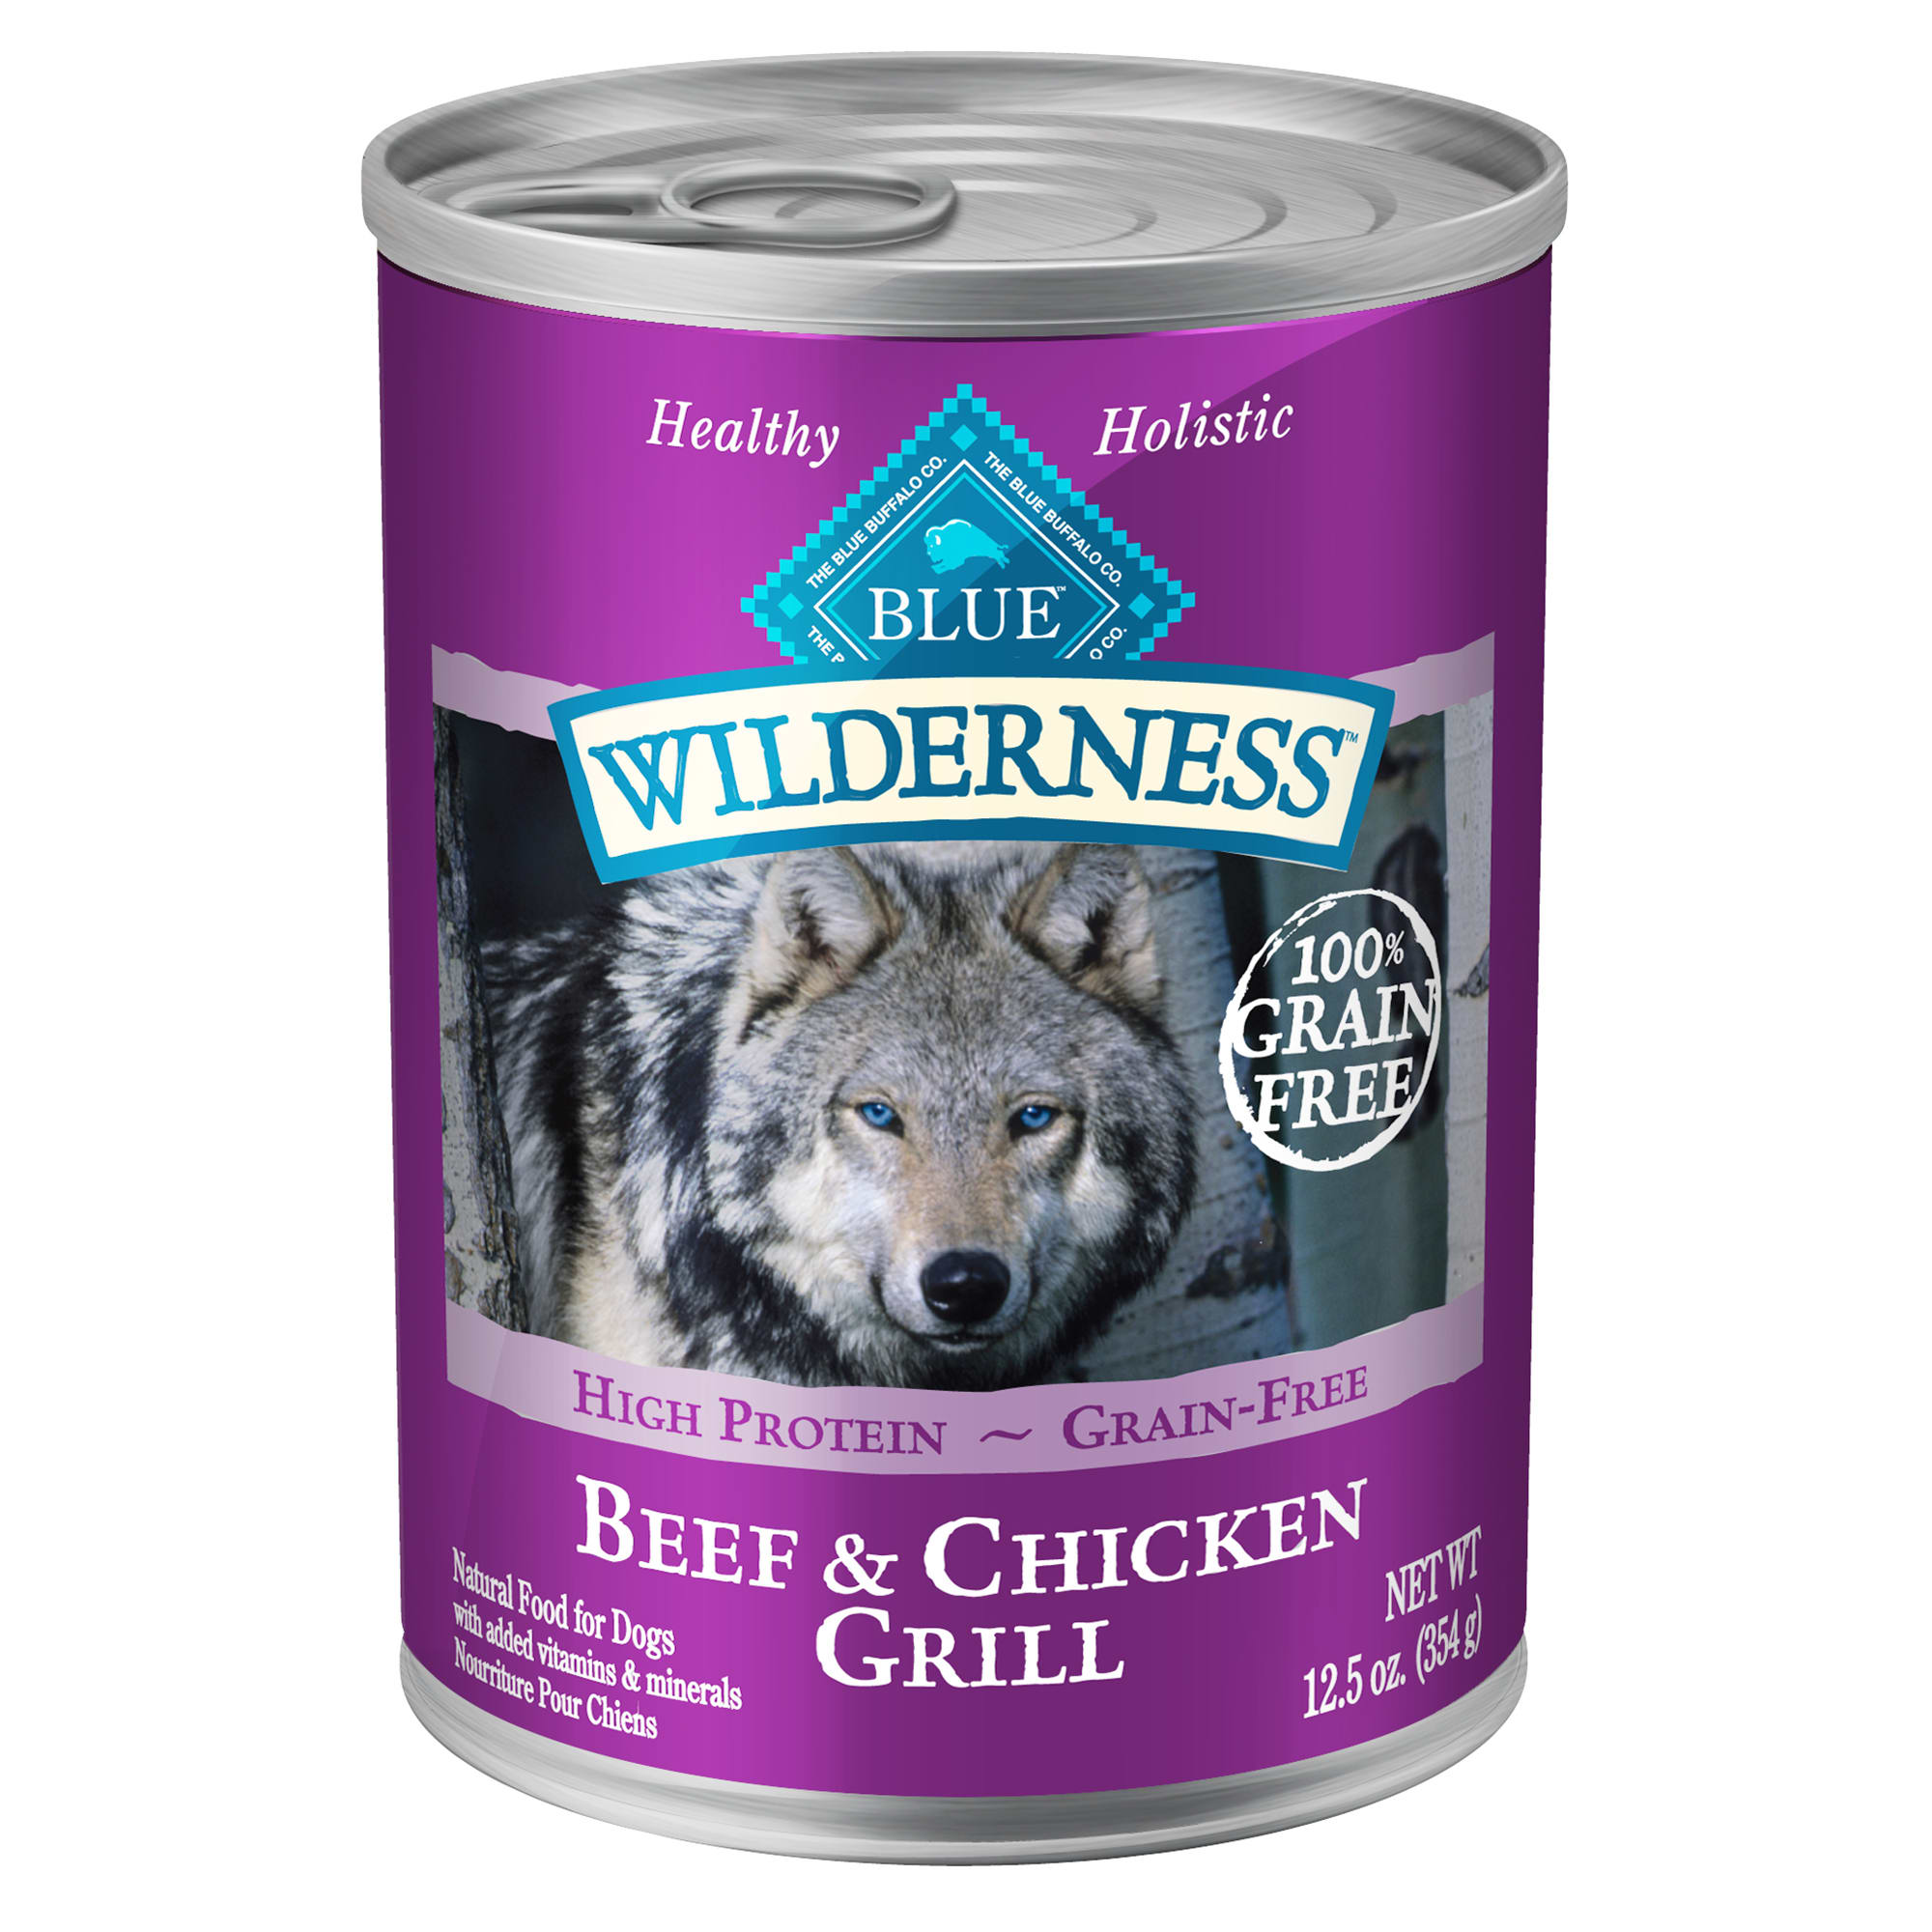 Blue Buffalo Dog Food Coupon Target